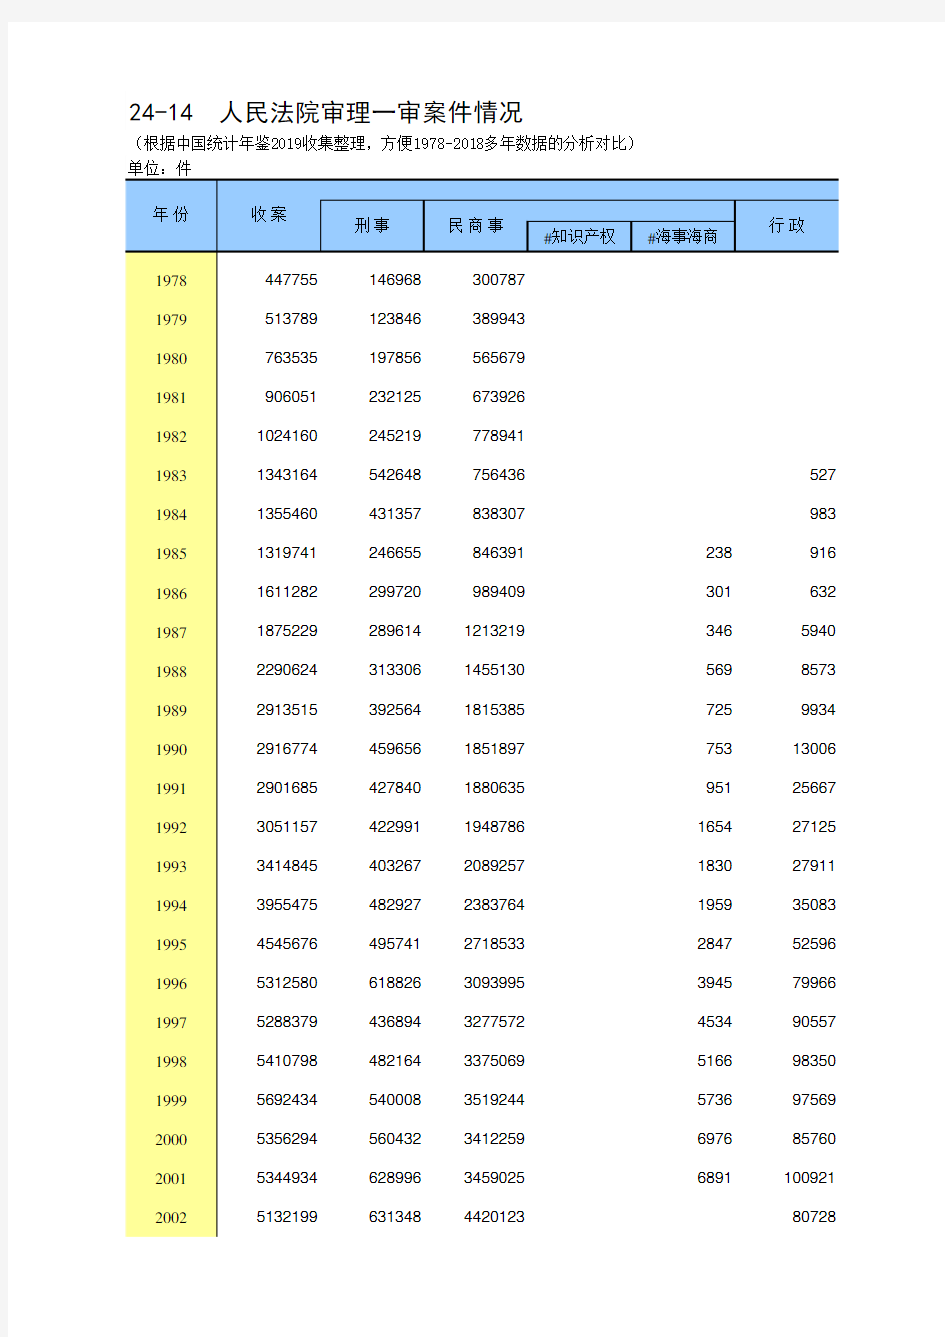 24-14 中国统计年鉴数据处理：人民法院审理一审案件情况(仅全国指标,便于1978-2018多年数据分析对比)